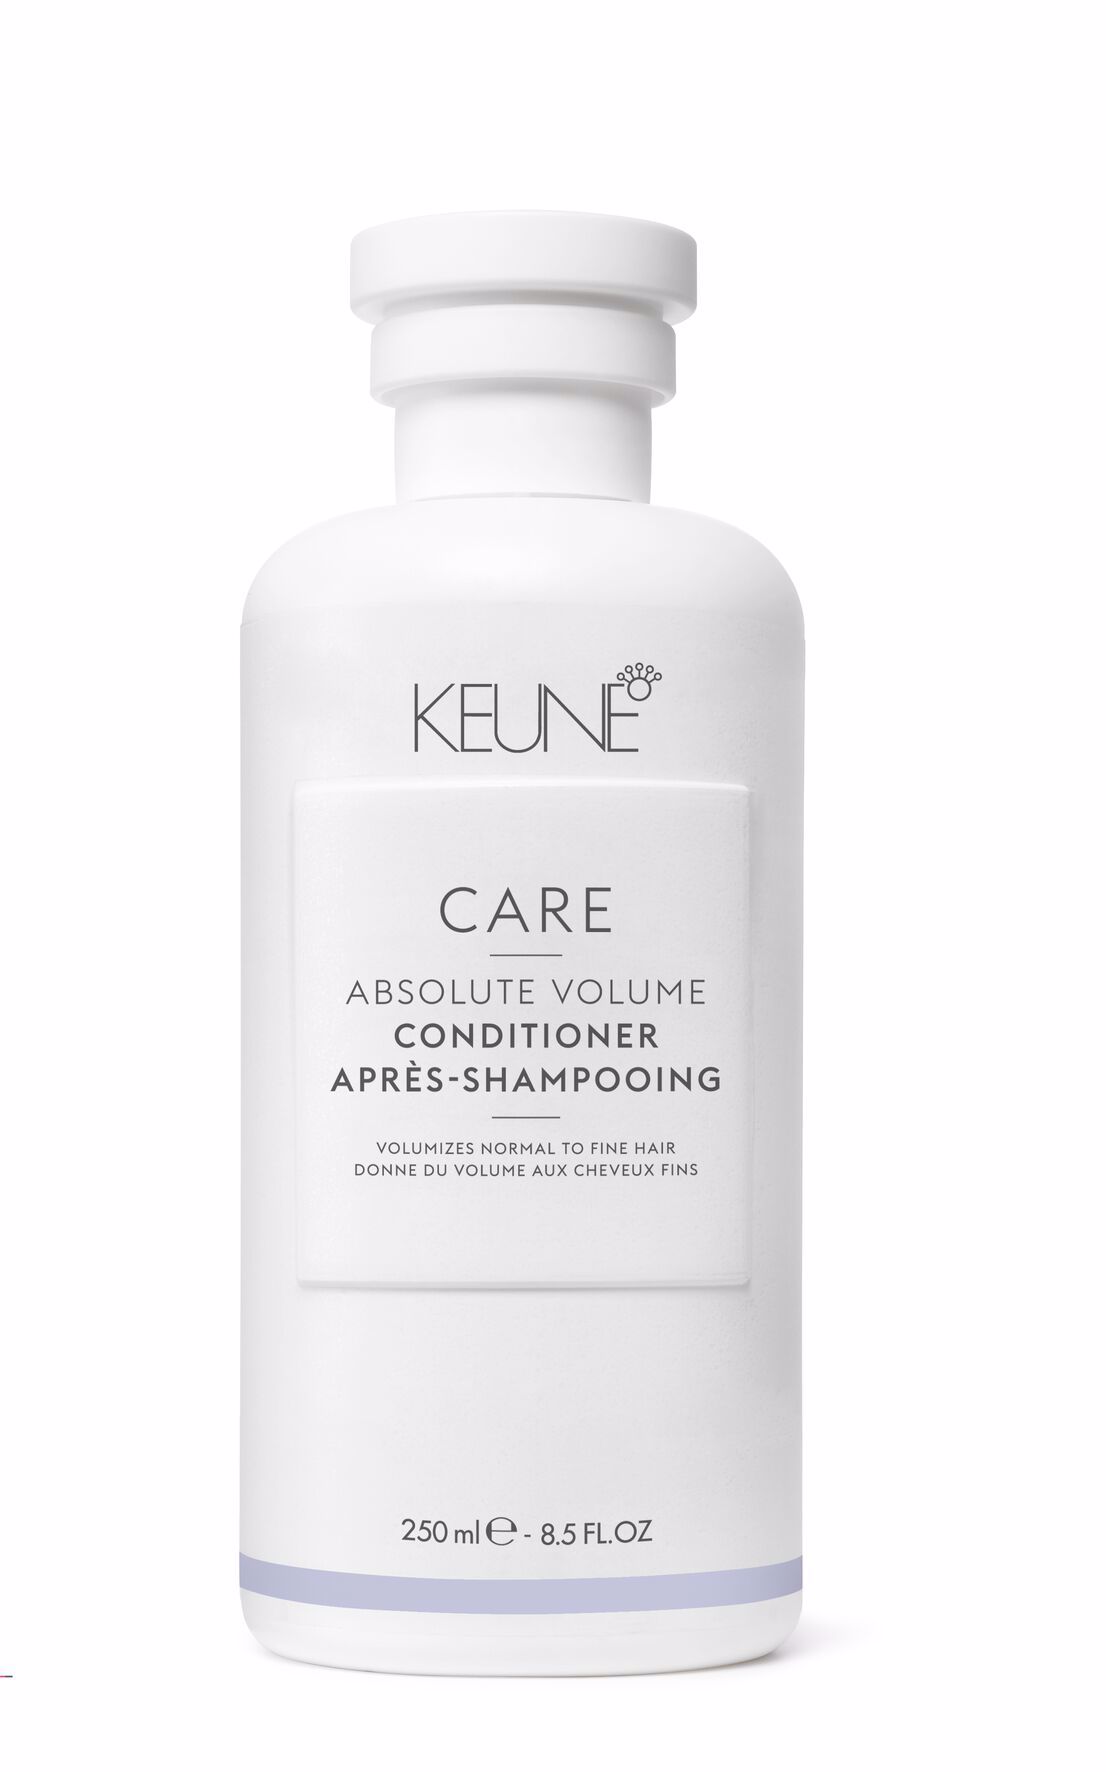 Der Care Absolute Volume Conditioner verleiht feinem, dünnes Haar stärken und Volumen, ohne zu beschweren. Angereichert mit Provitamin B5 und Weizenproteinen für starke Haarstruktur.